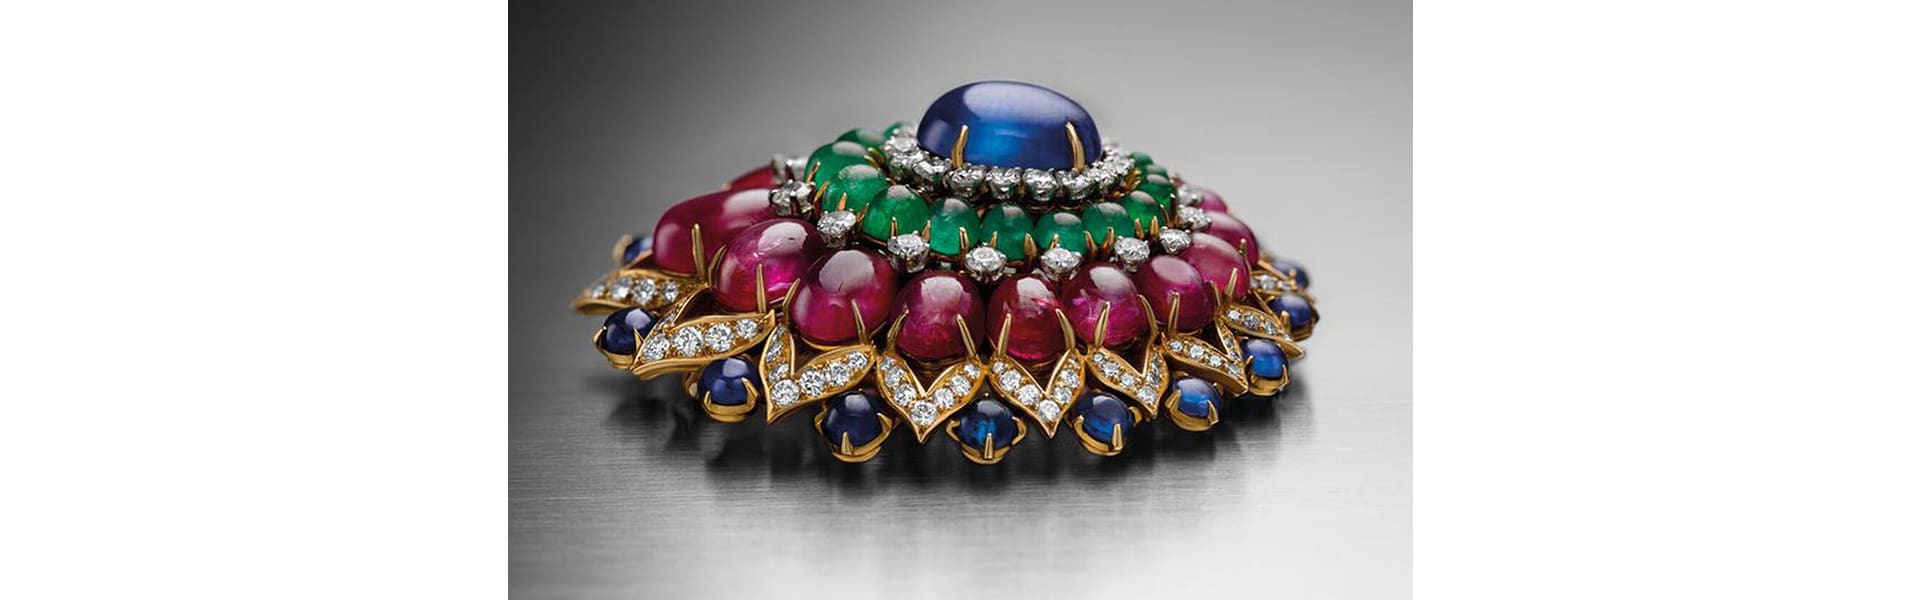 Bvlgari colored gemstones.